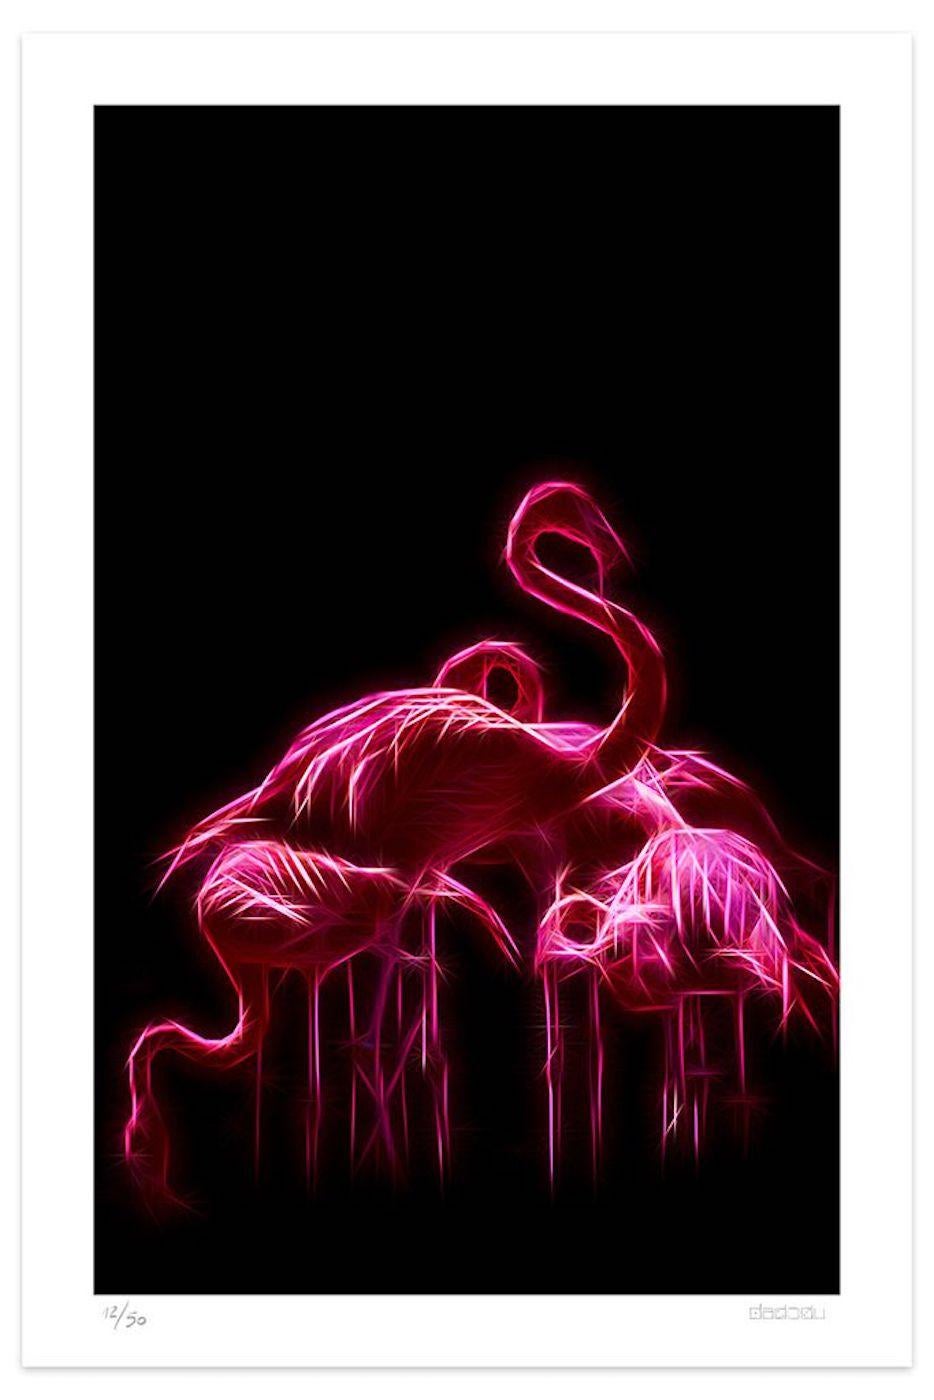 Dimensions de l'image : 90 x 56,4 cm.

Flamingos est une élégante impression giclée réalisée par le groupe d'artistes contemporains Dadodu en 2019.

Cette œuvre d'art originale représente des flamants roses avec des lumières néon sur un fond